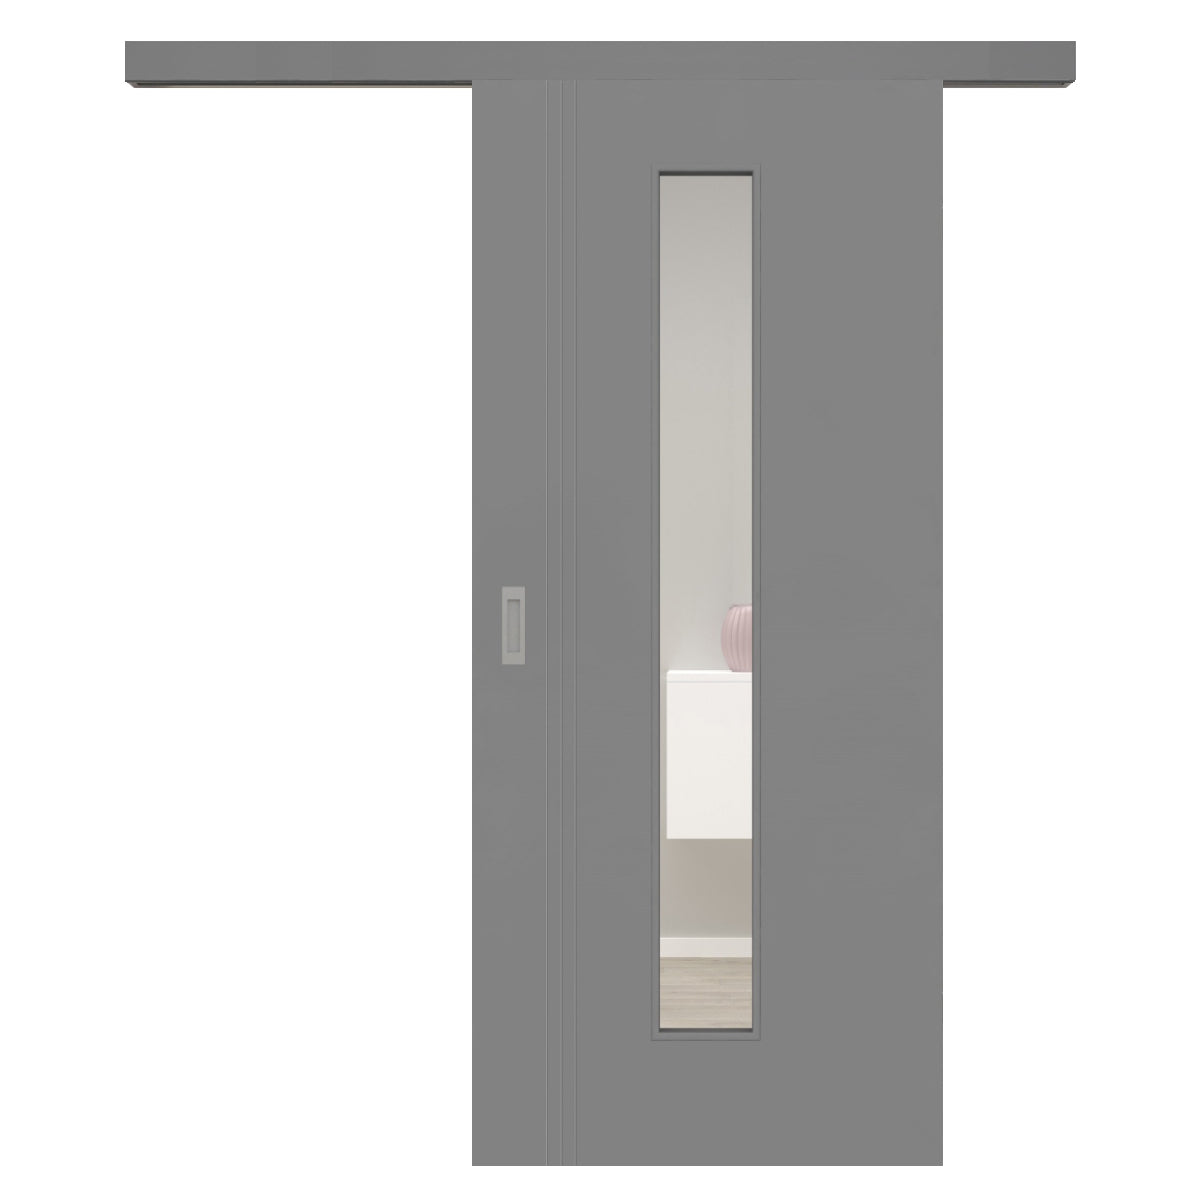 Schiebetür für Set mit grauem Laufkasten mit Lichtausschnitt grau 3 Rillen aufrecht Schlosseite - Modell Designtür VS37LAM